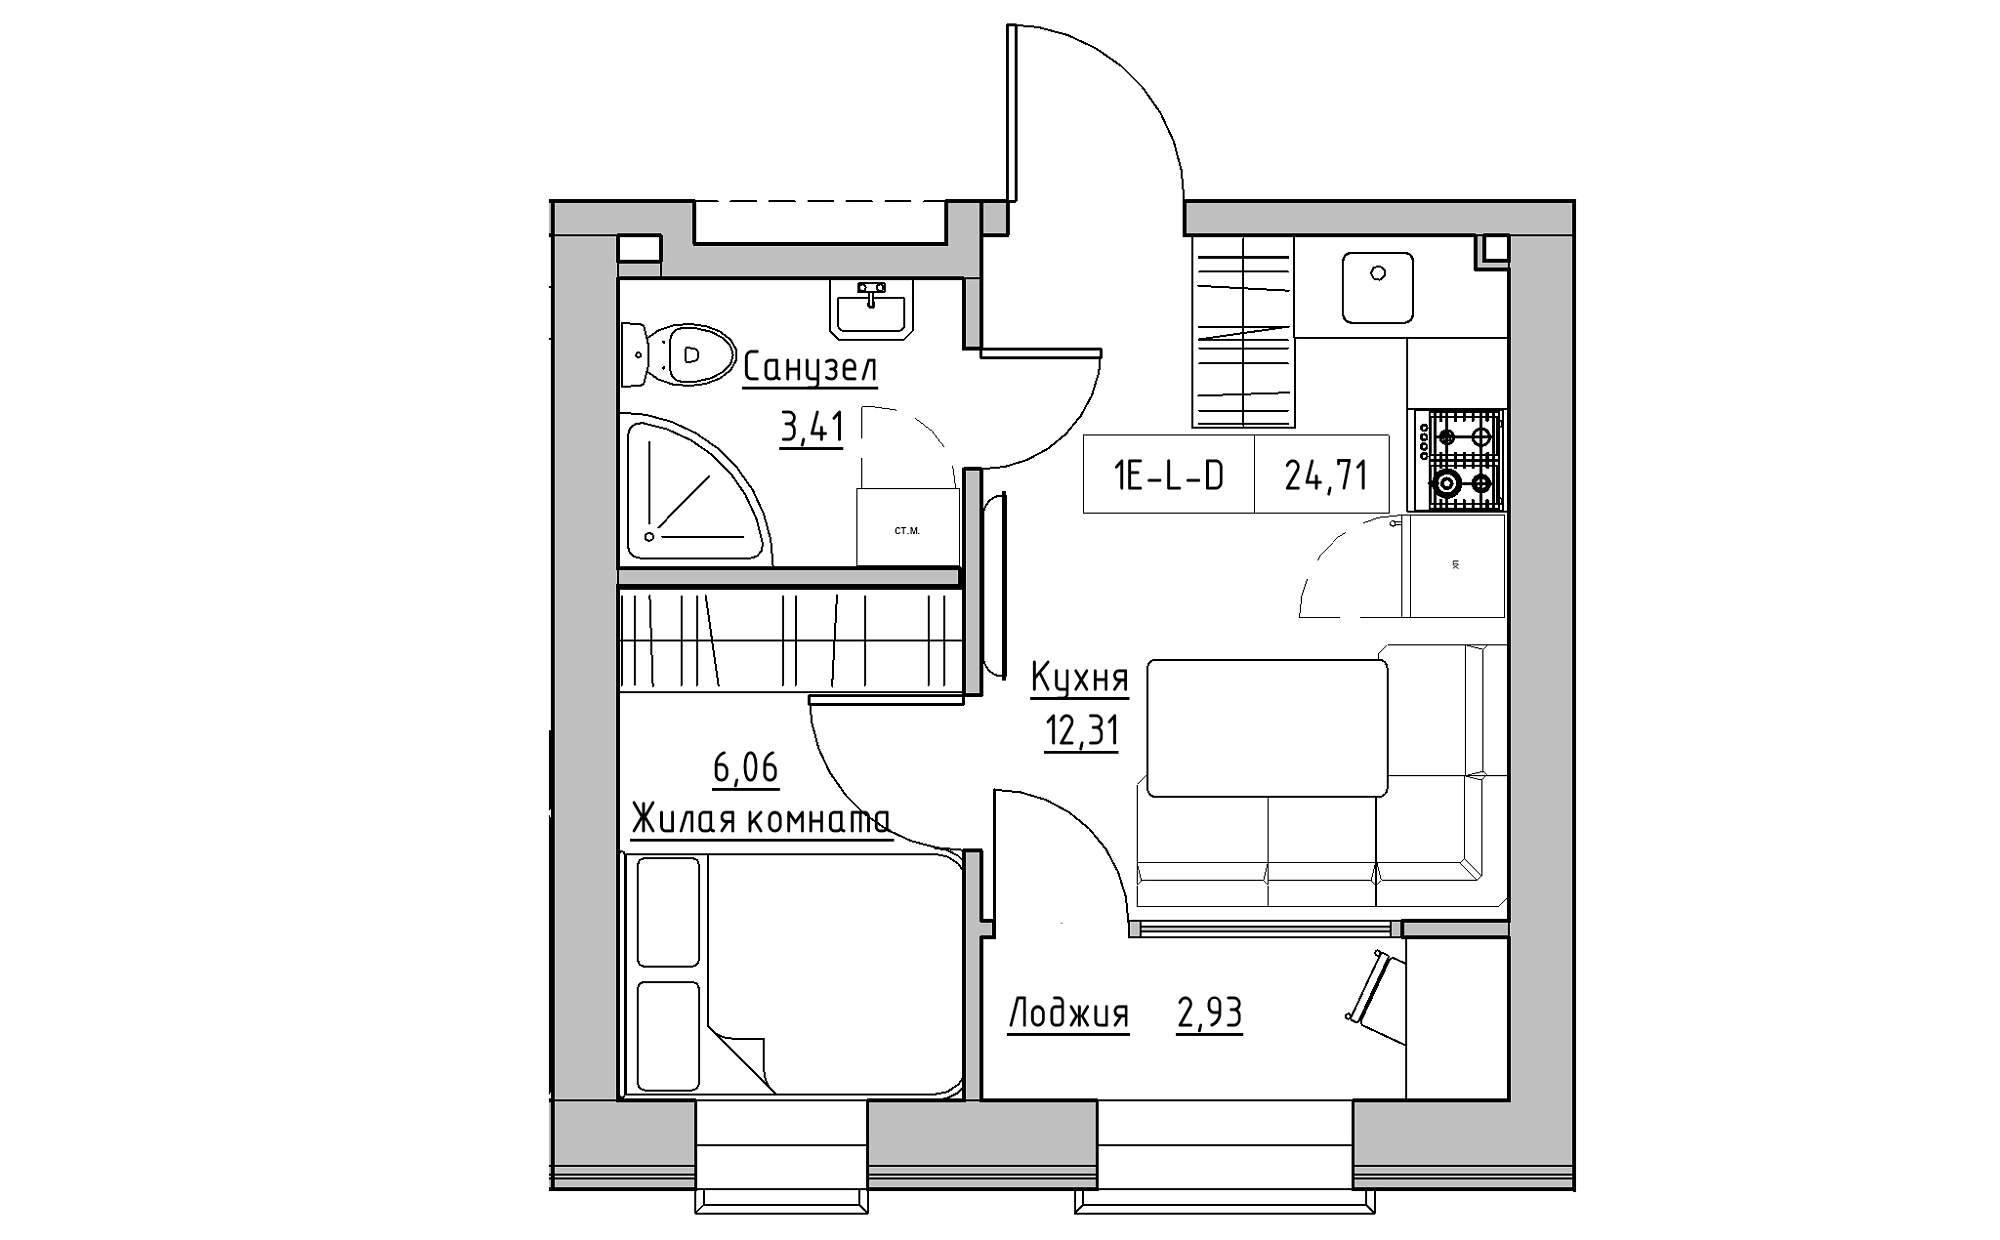 Планировка 1-к квартира площей 24.71м2, KS-022-04/0002.